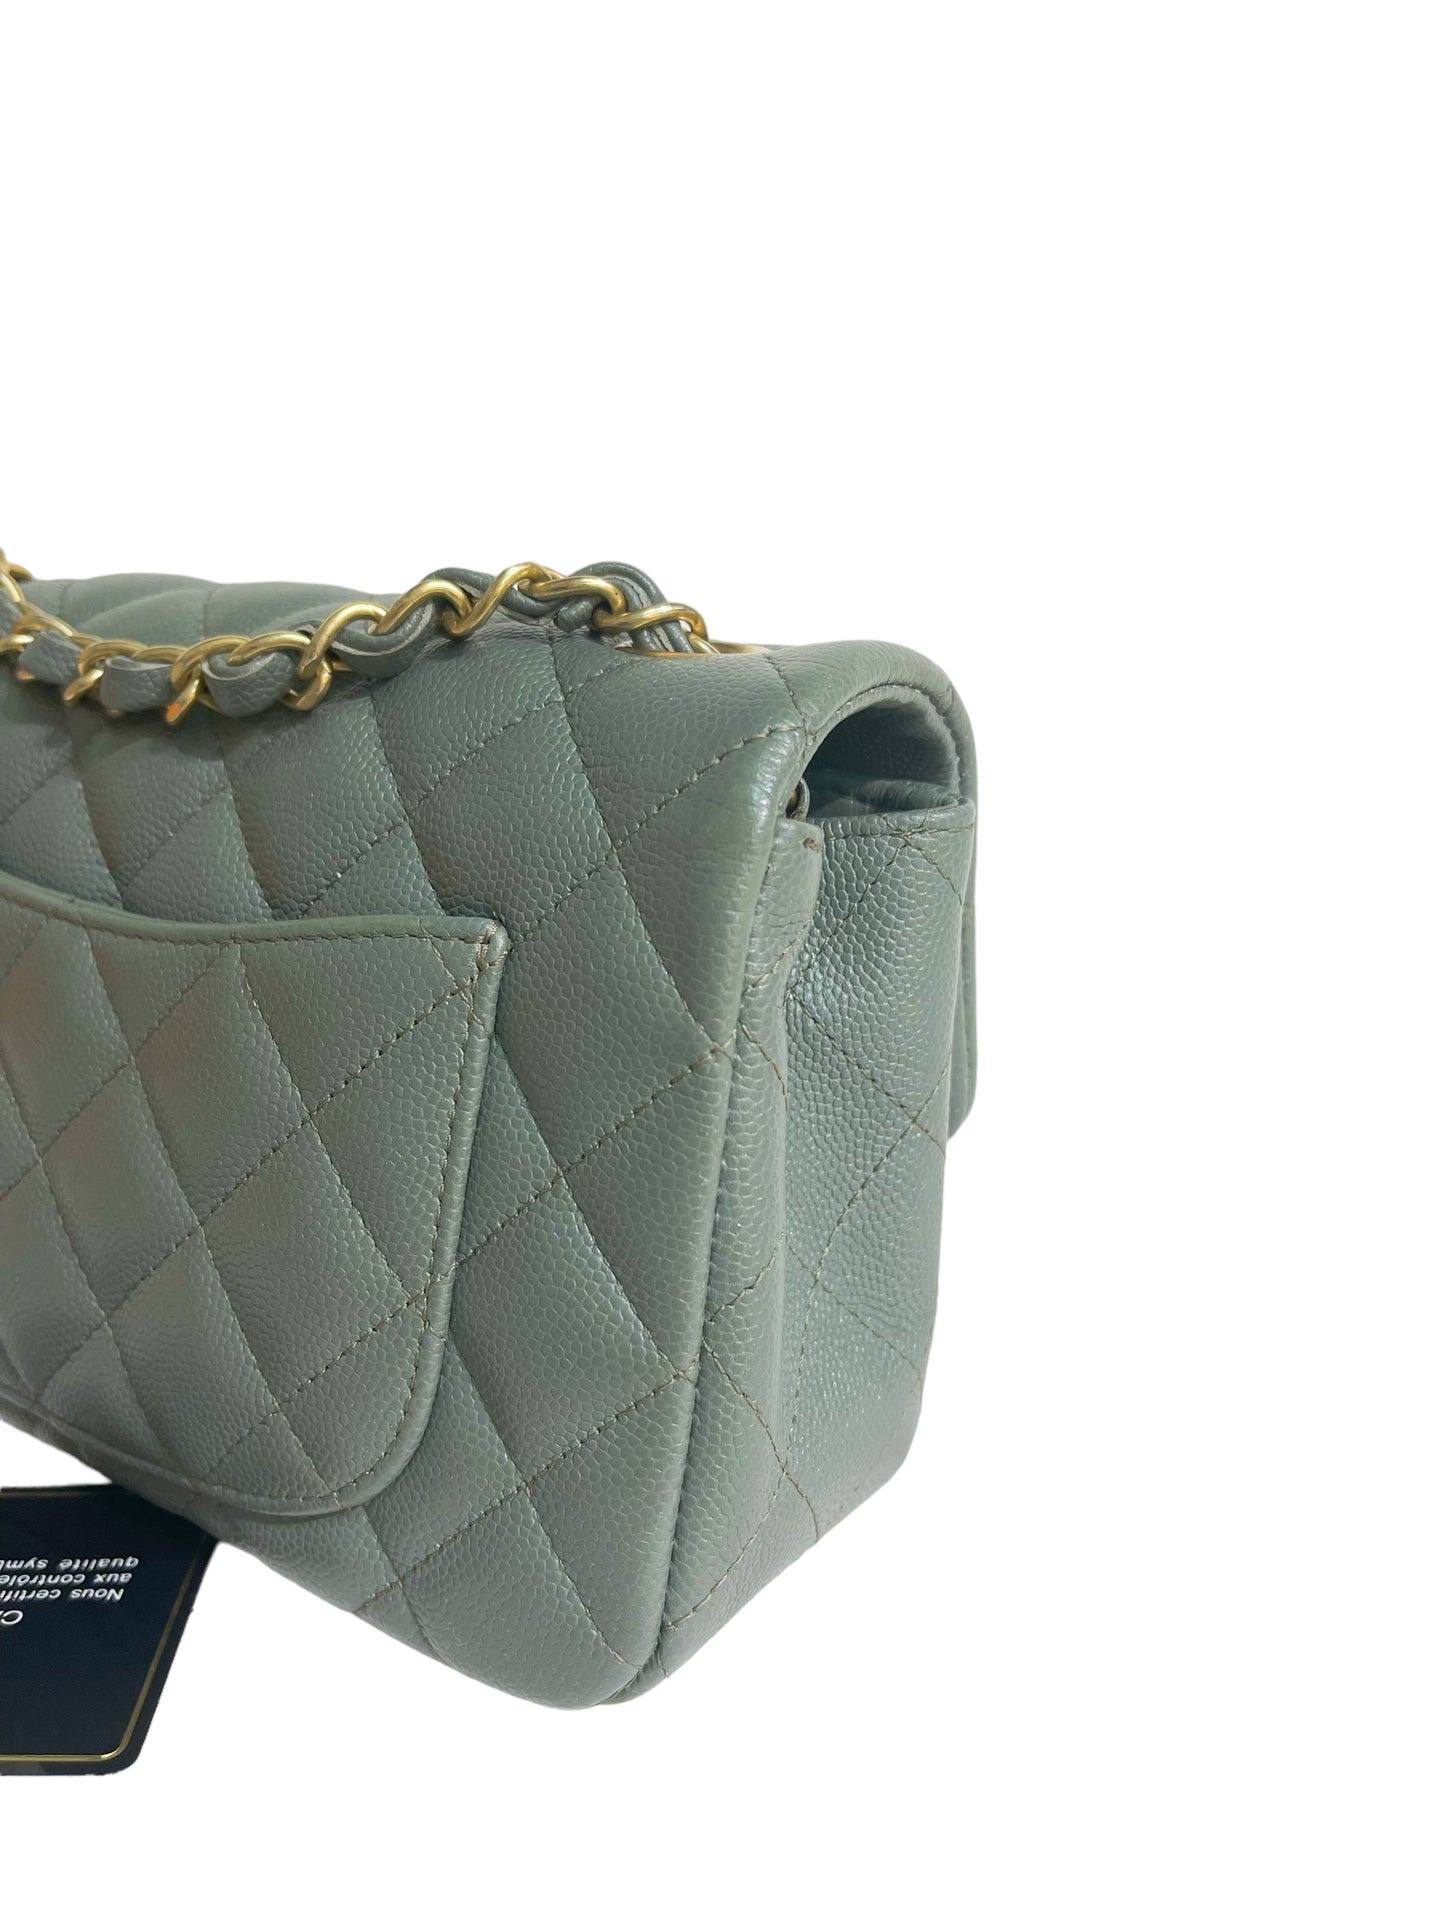 CHANEL 18C Iridescent Green Caviar Rectangular Mini Flap Bag Brushed Gold  Hardware